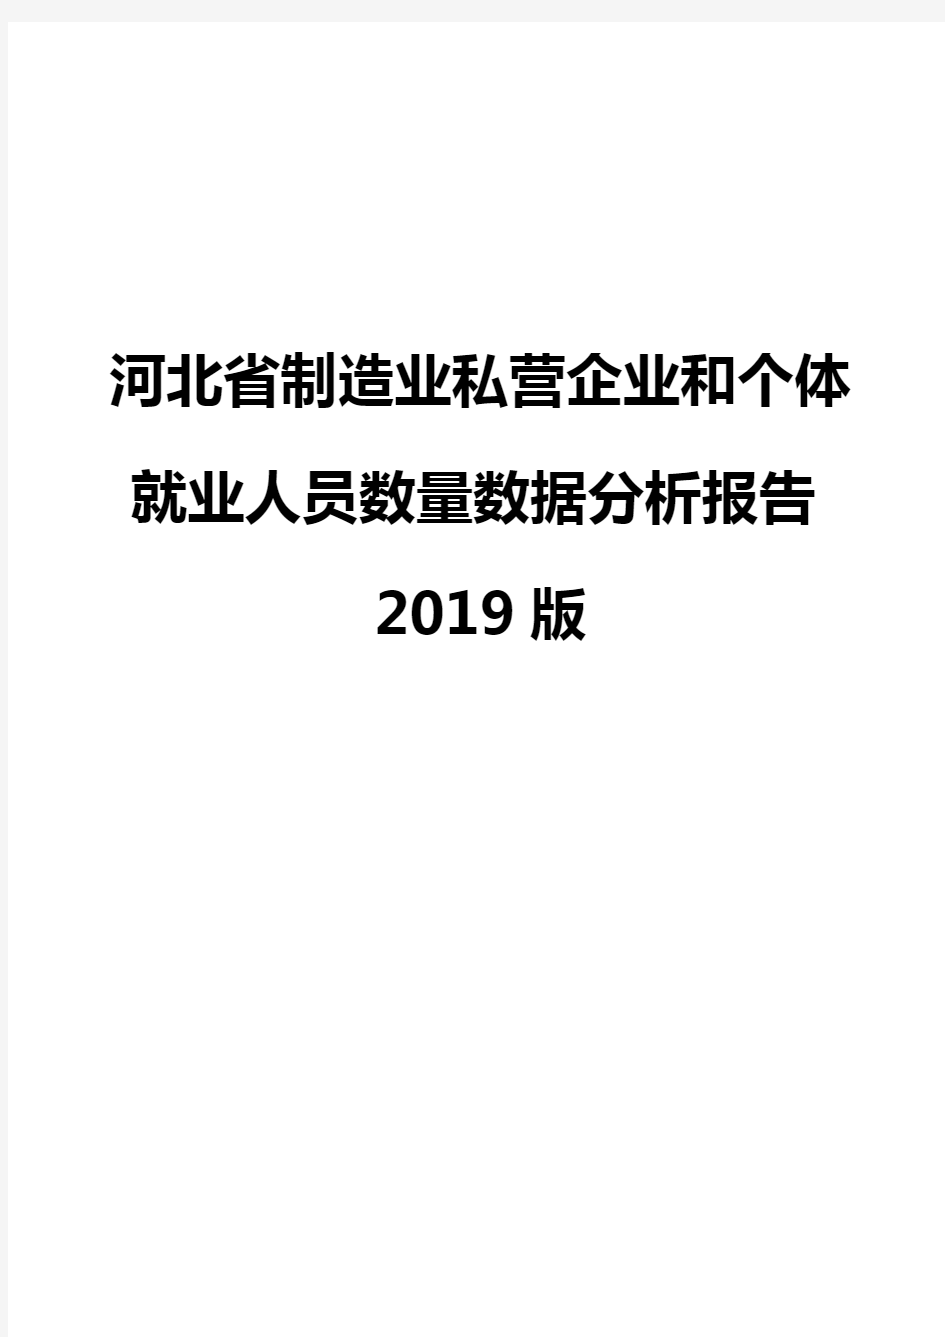 河北省制造业私营企业和个体就业人员数量数据分析报告2019版